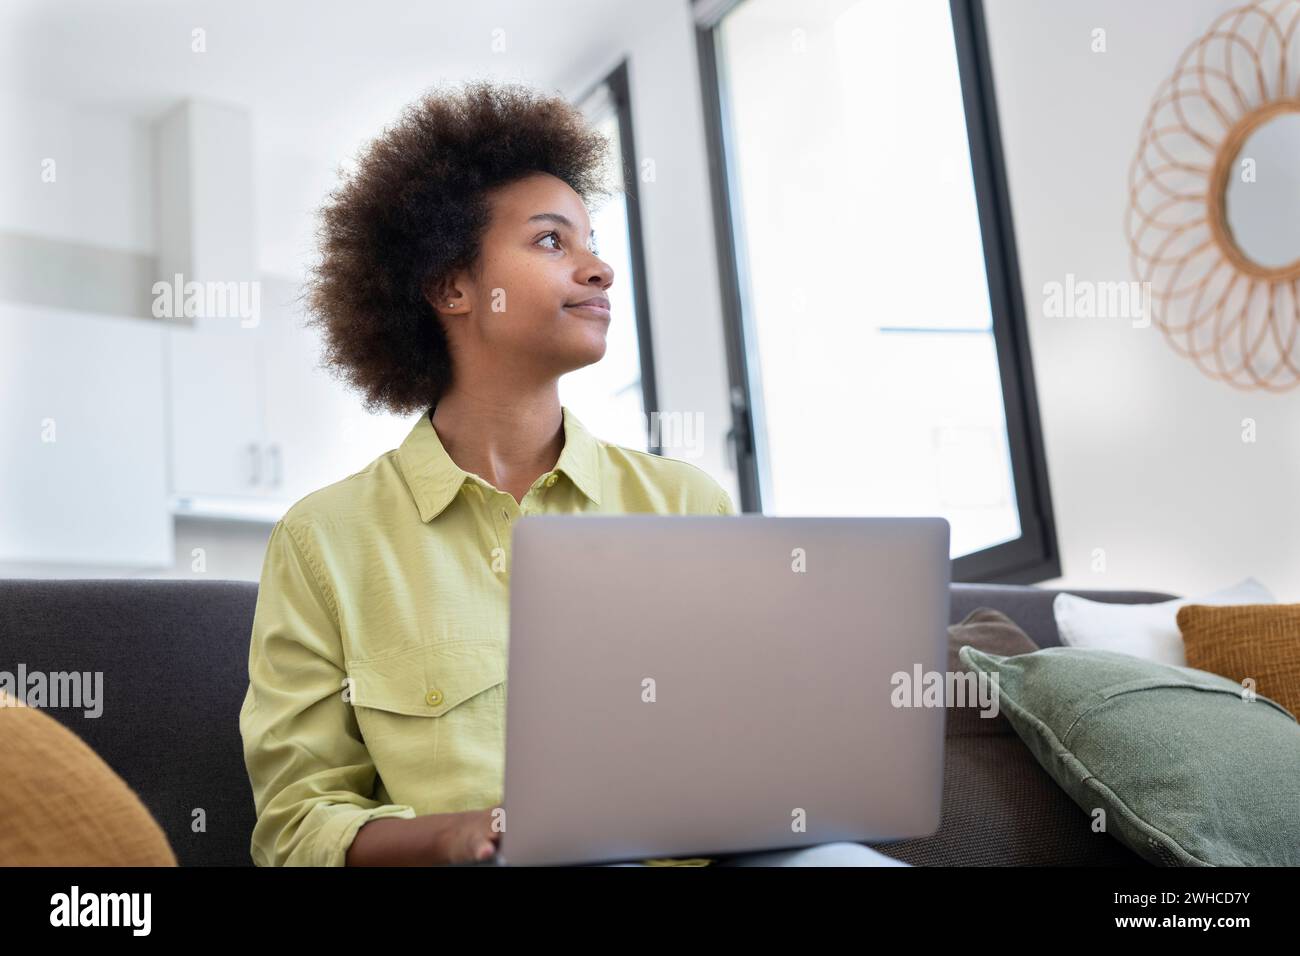 Giovane donna nera sorridente che usa il computer portatile, riposa sul comodo divano, parla in videochiamata, chatta online, naviga su Internet, guarda film, fai shopping su Internet. Utente di gadget digitali pigri Foto Stock